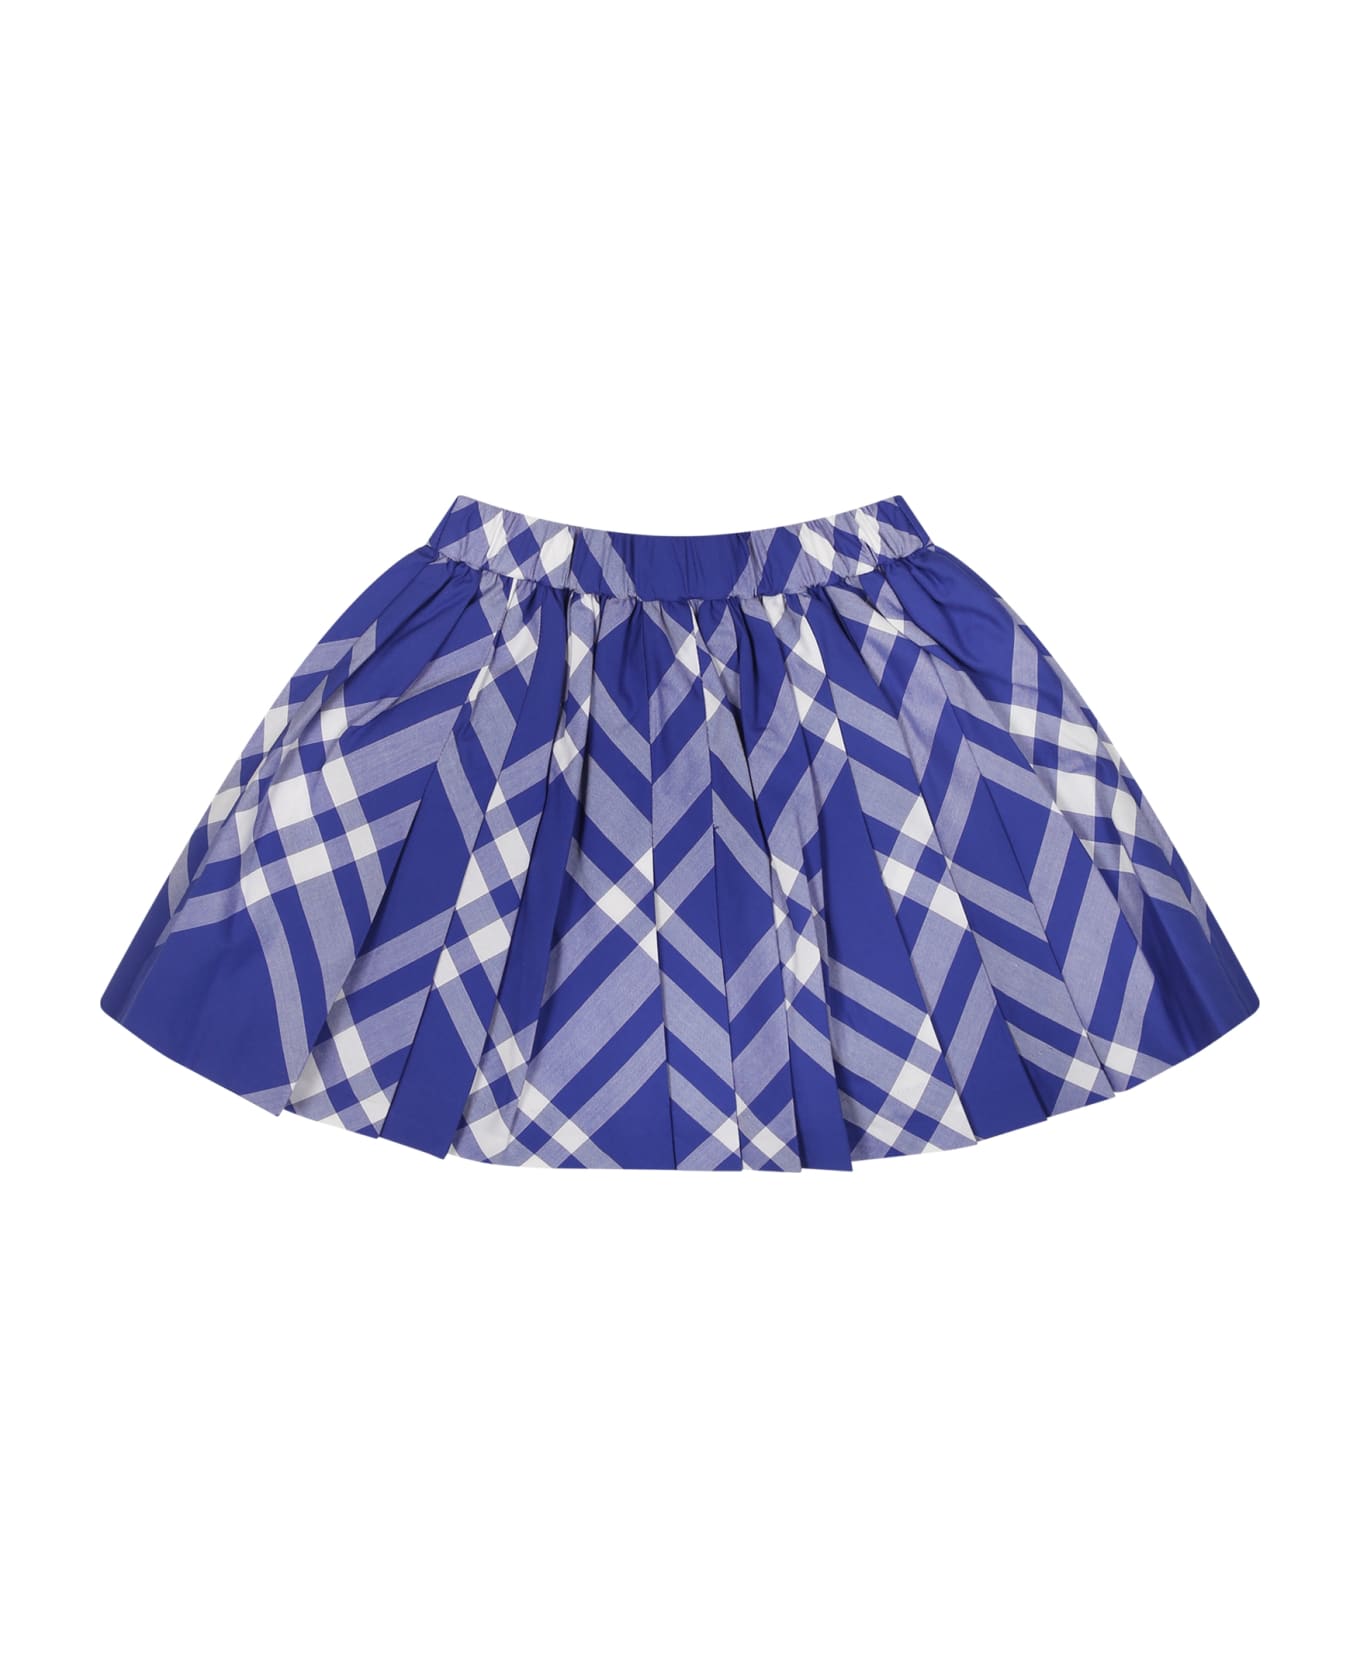 Burberry Blue Skirt For Baby Girl - Blue ボトムス